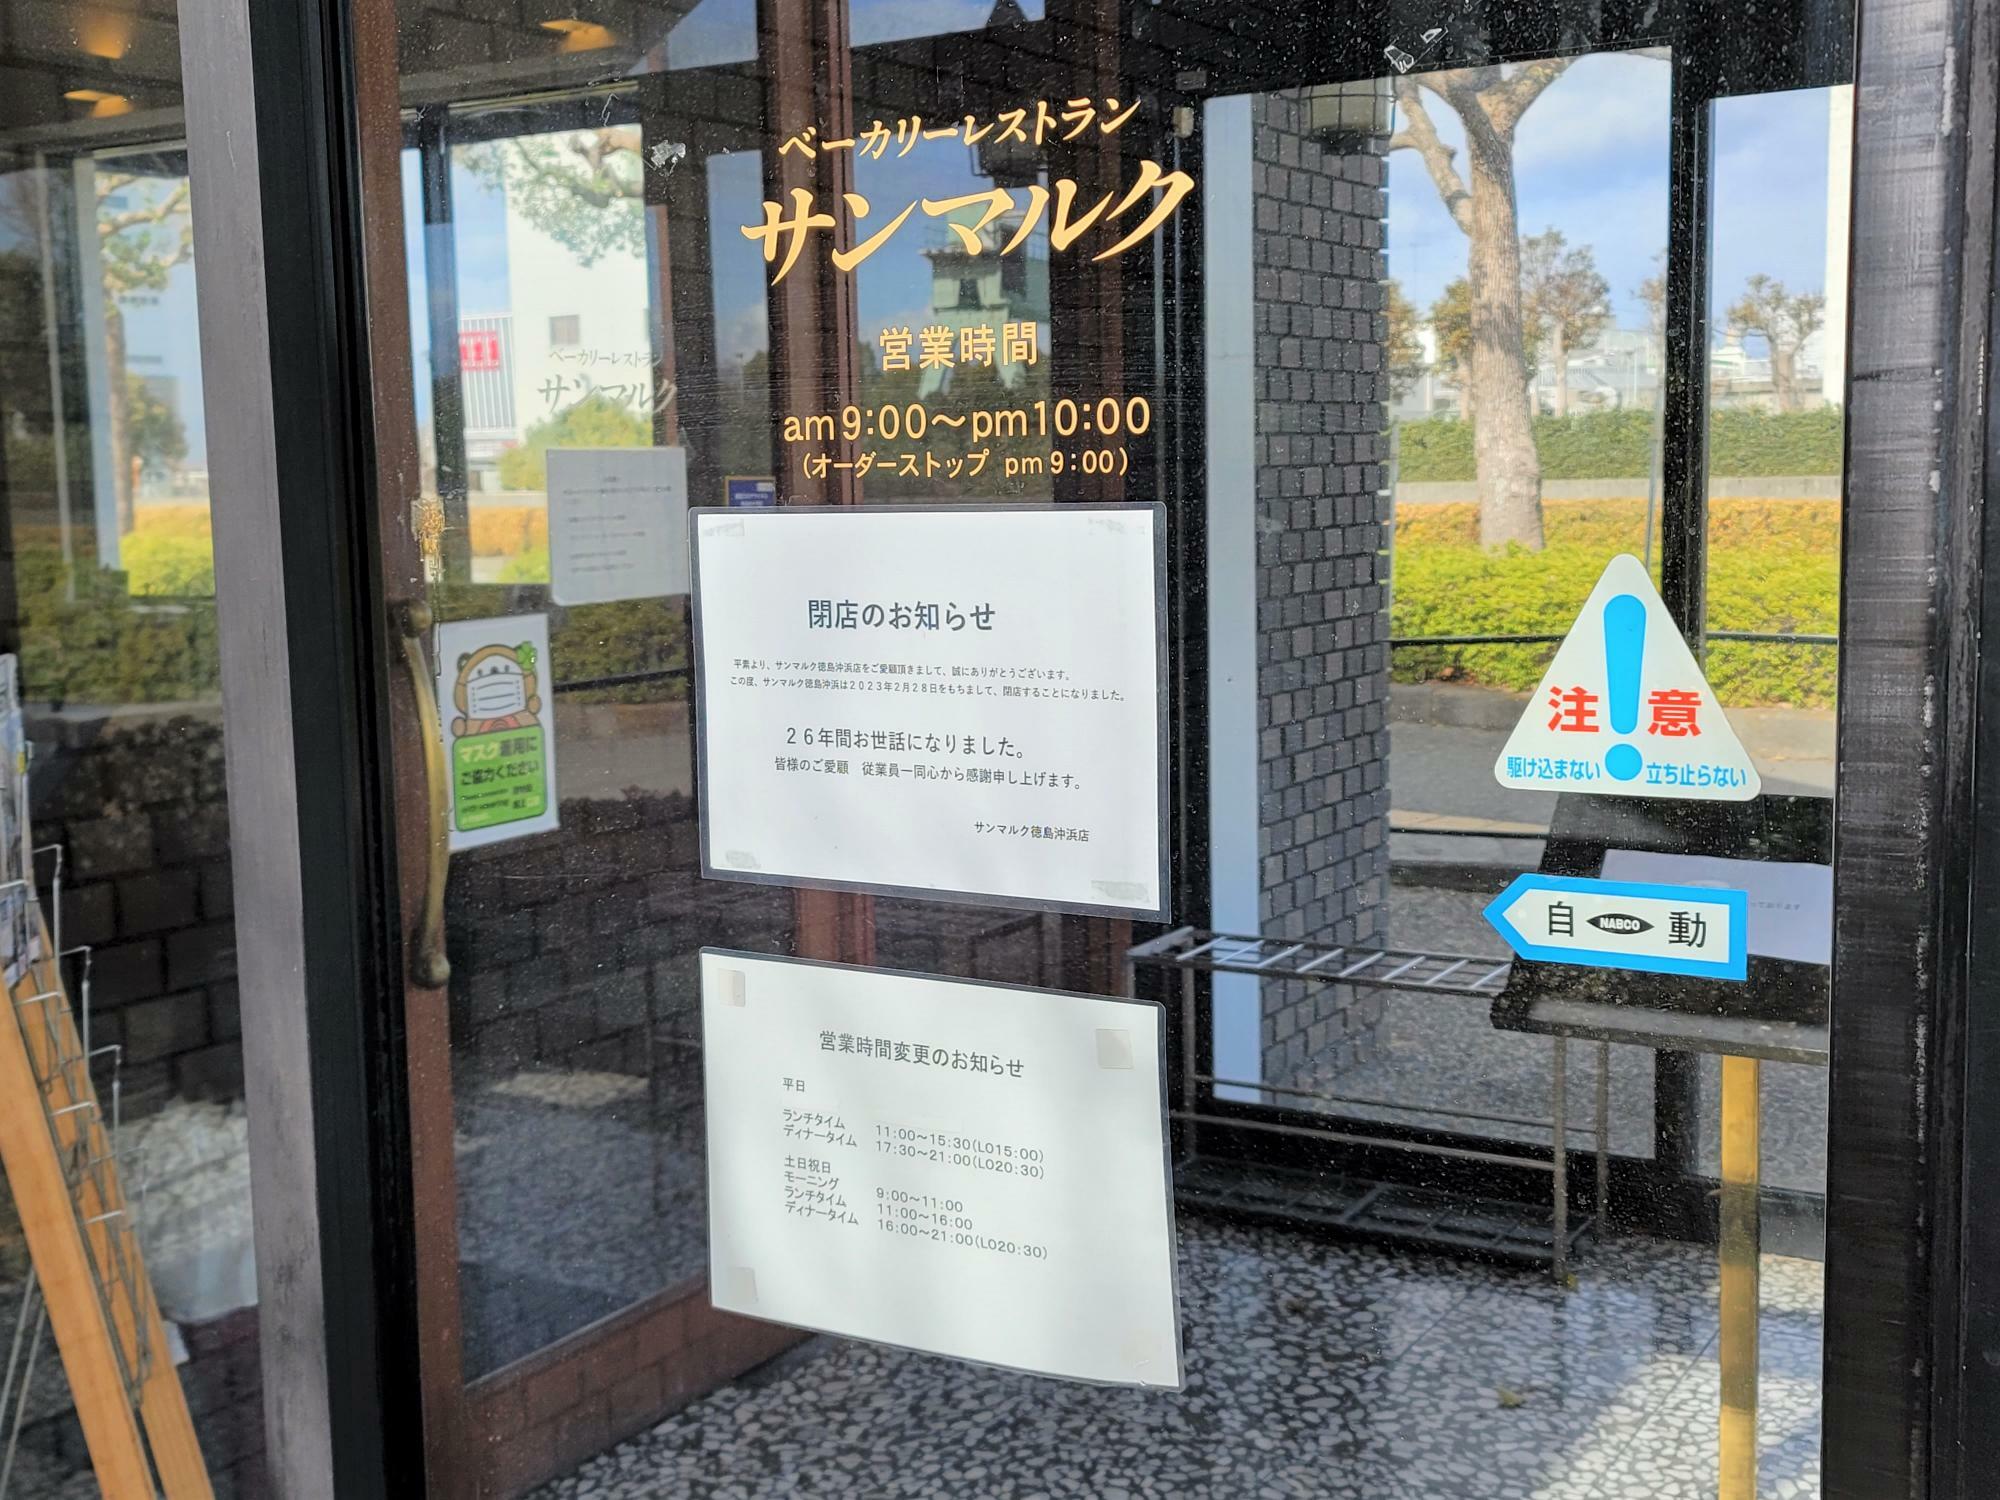 「ベーカリーレストランサンマルク 徳島沖浜店」に貼り出されていた、閉店のお知らせ。